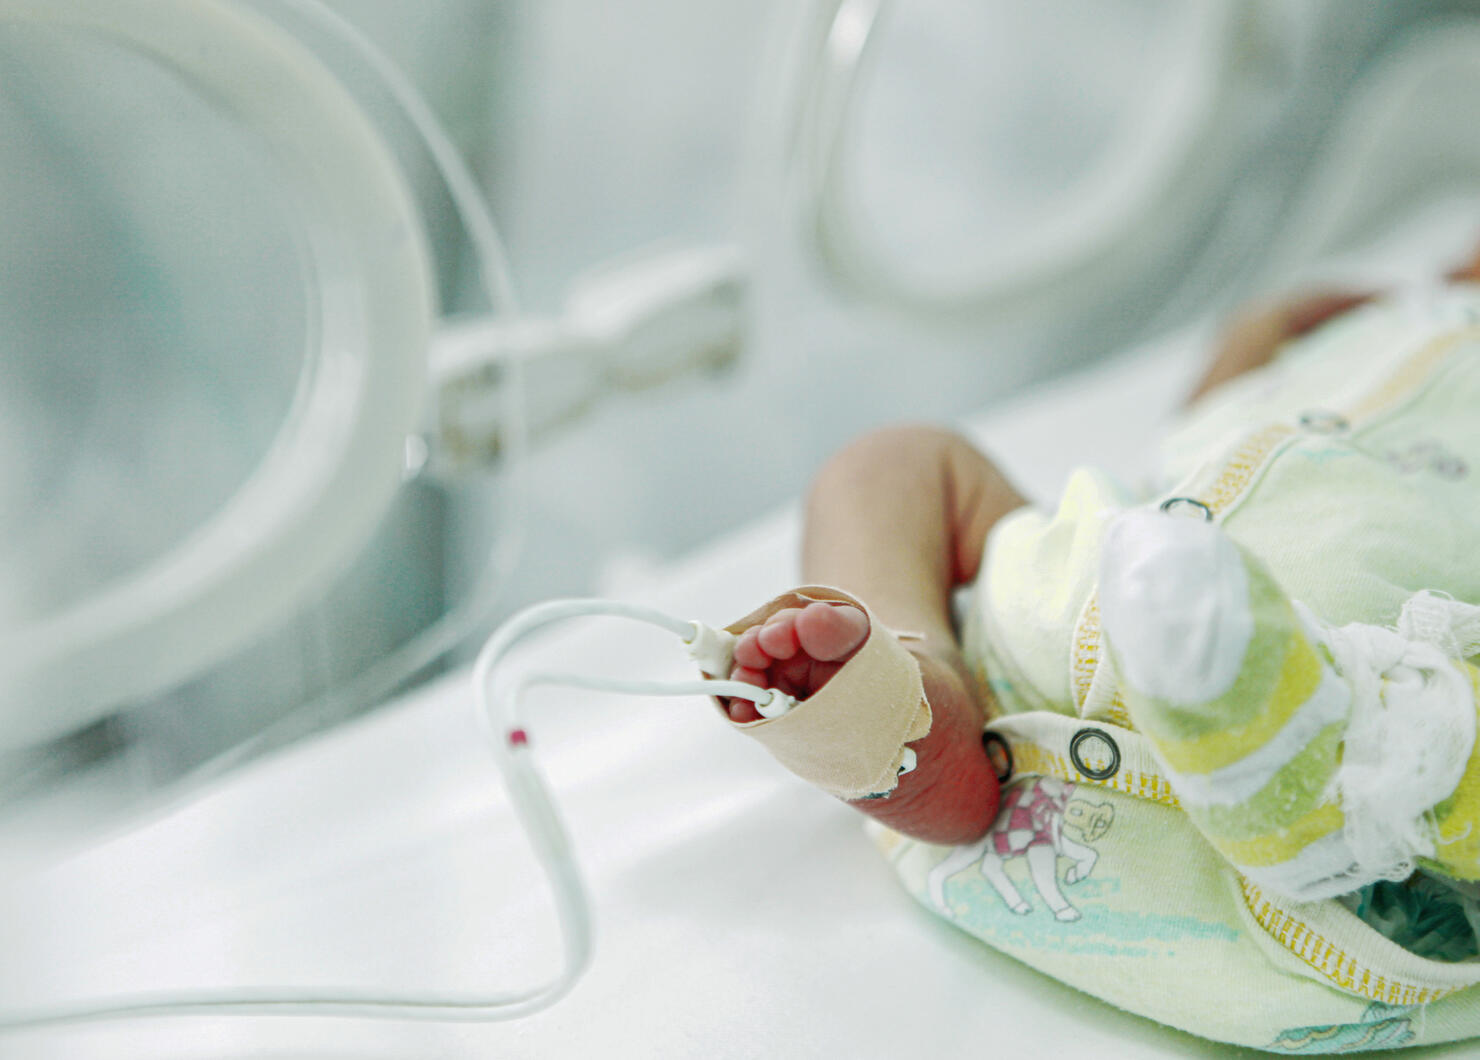 Newborn Baby In Neonatal Intensive Care Unit (NICU)